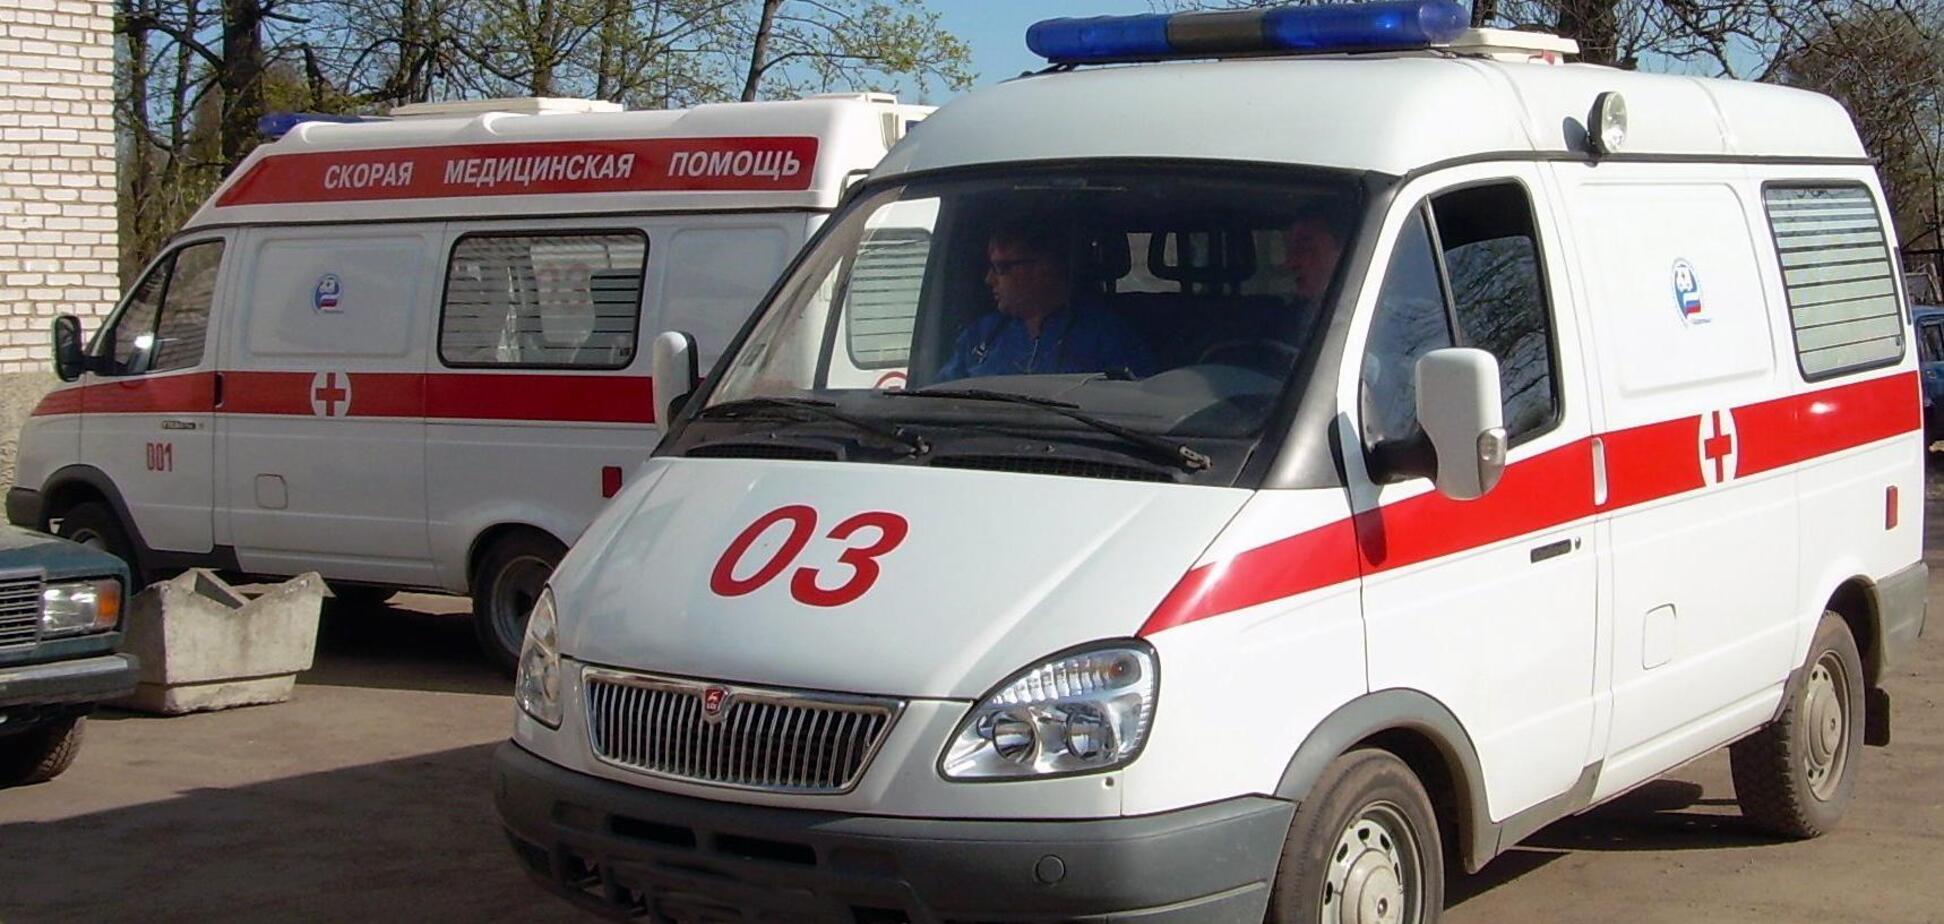 При критическом состоянии вы умрете:  врач 'скорой' рассказал об ужасах медицины в Украине